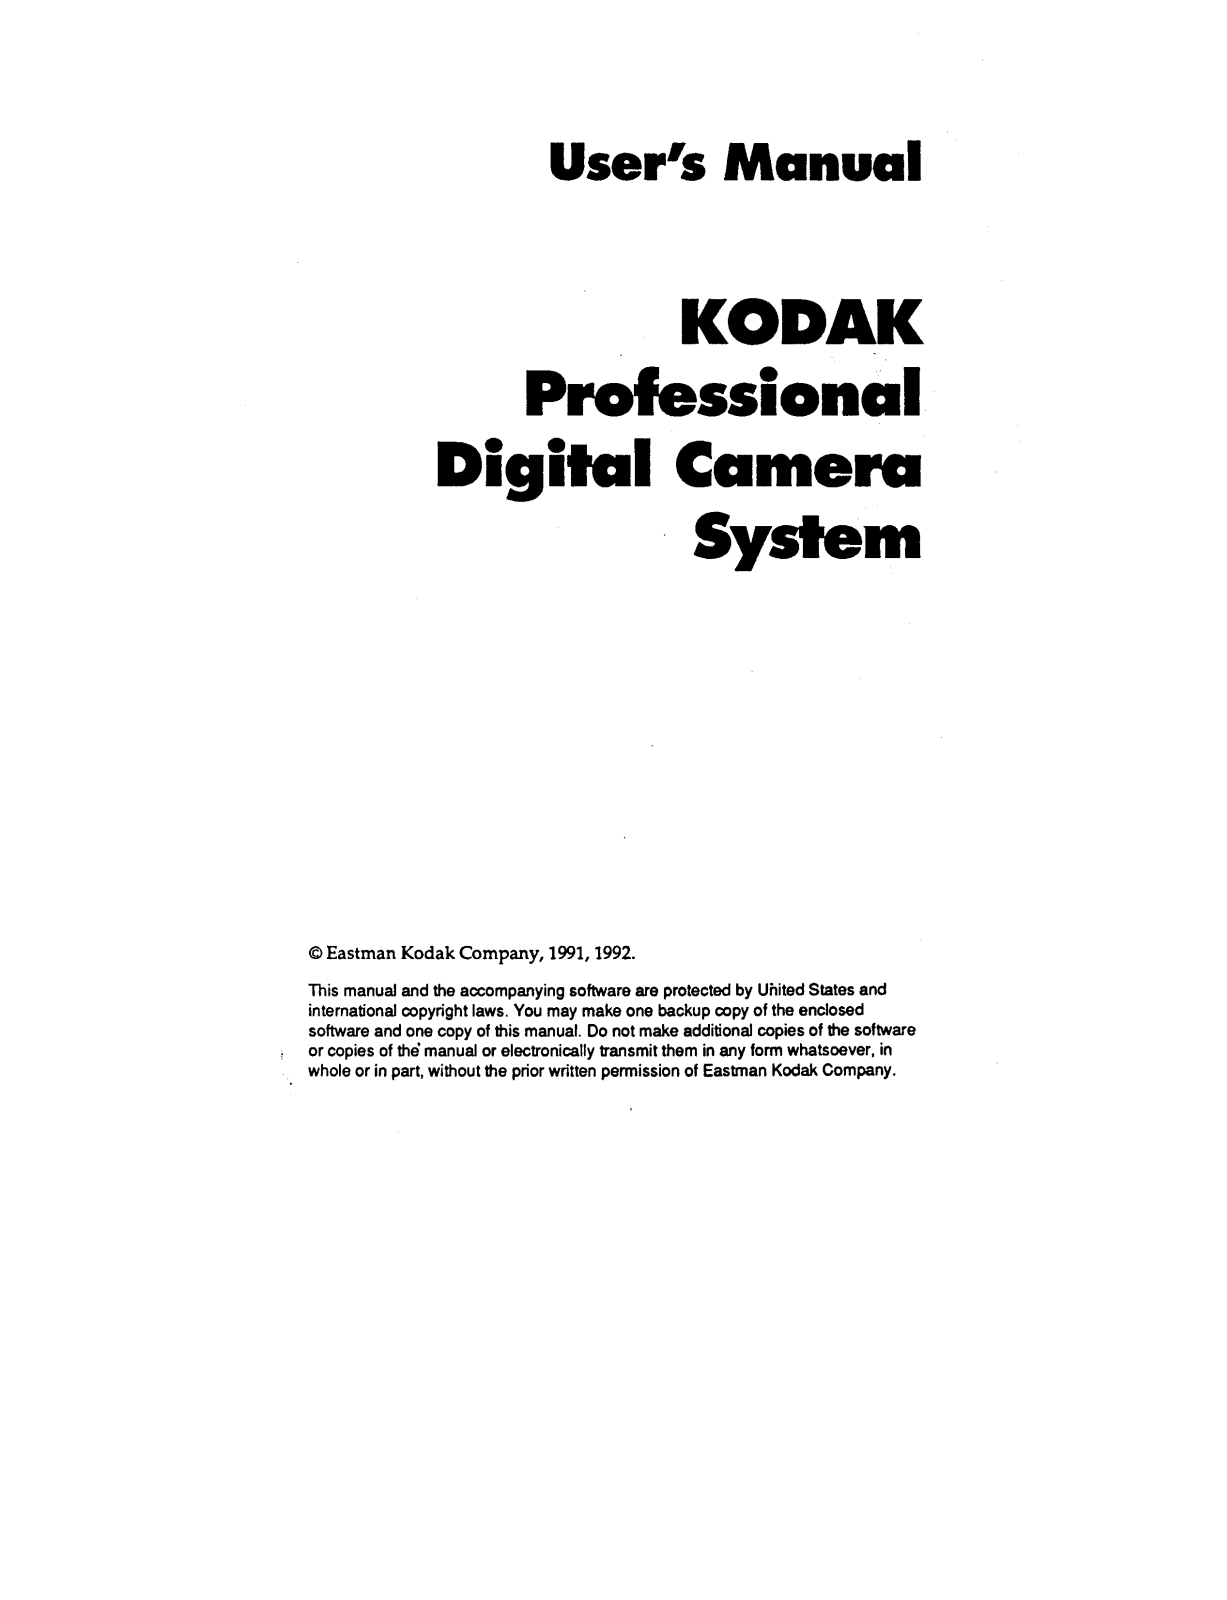 Kodak DCS SYSTEM 100 Manual